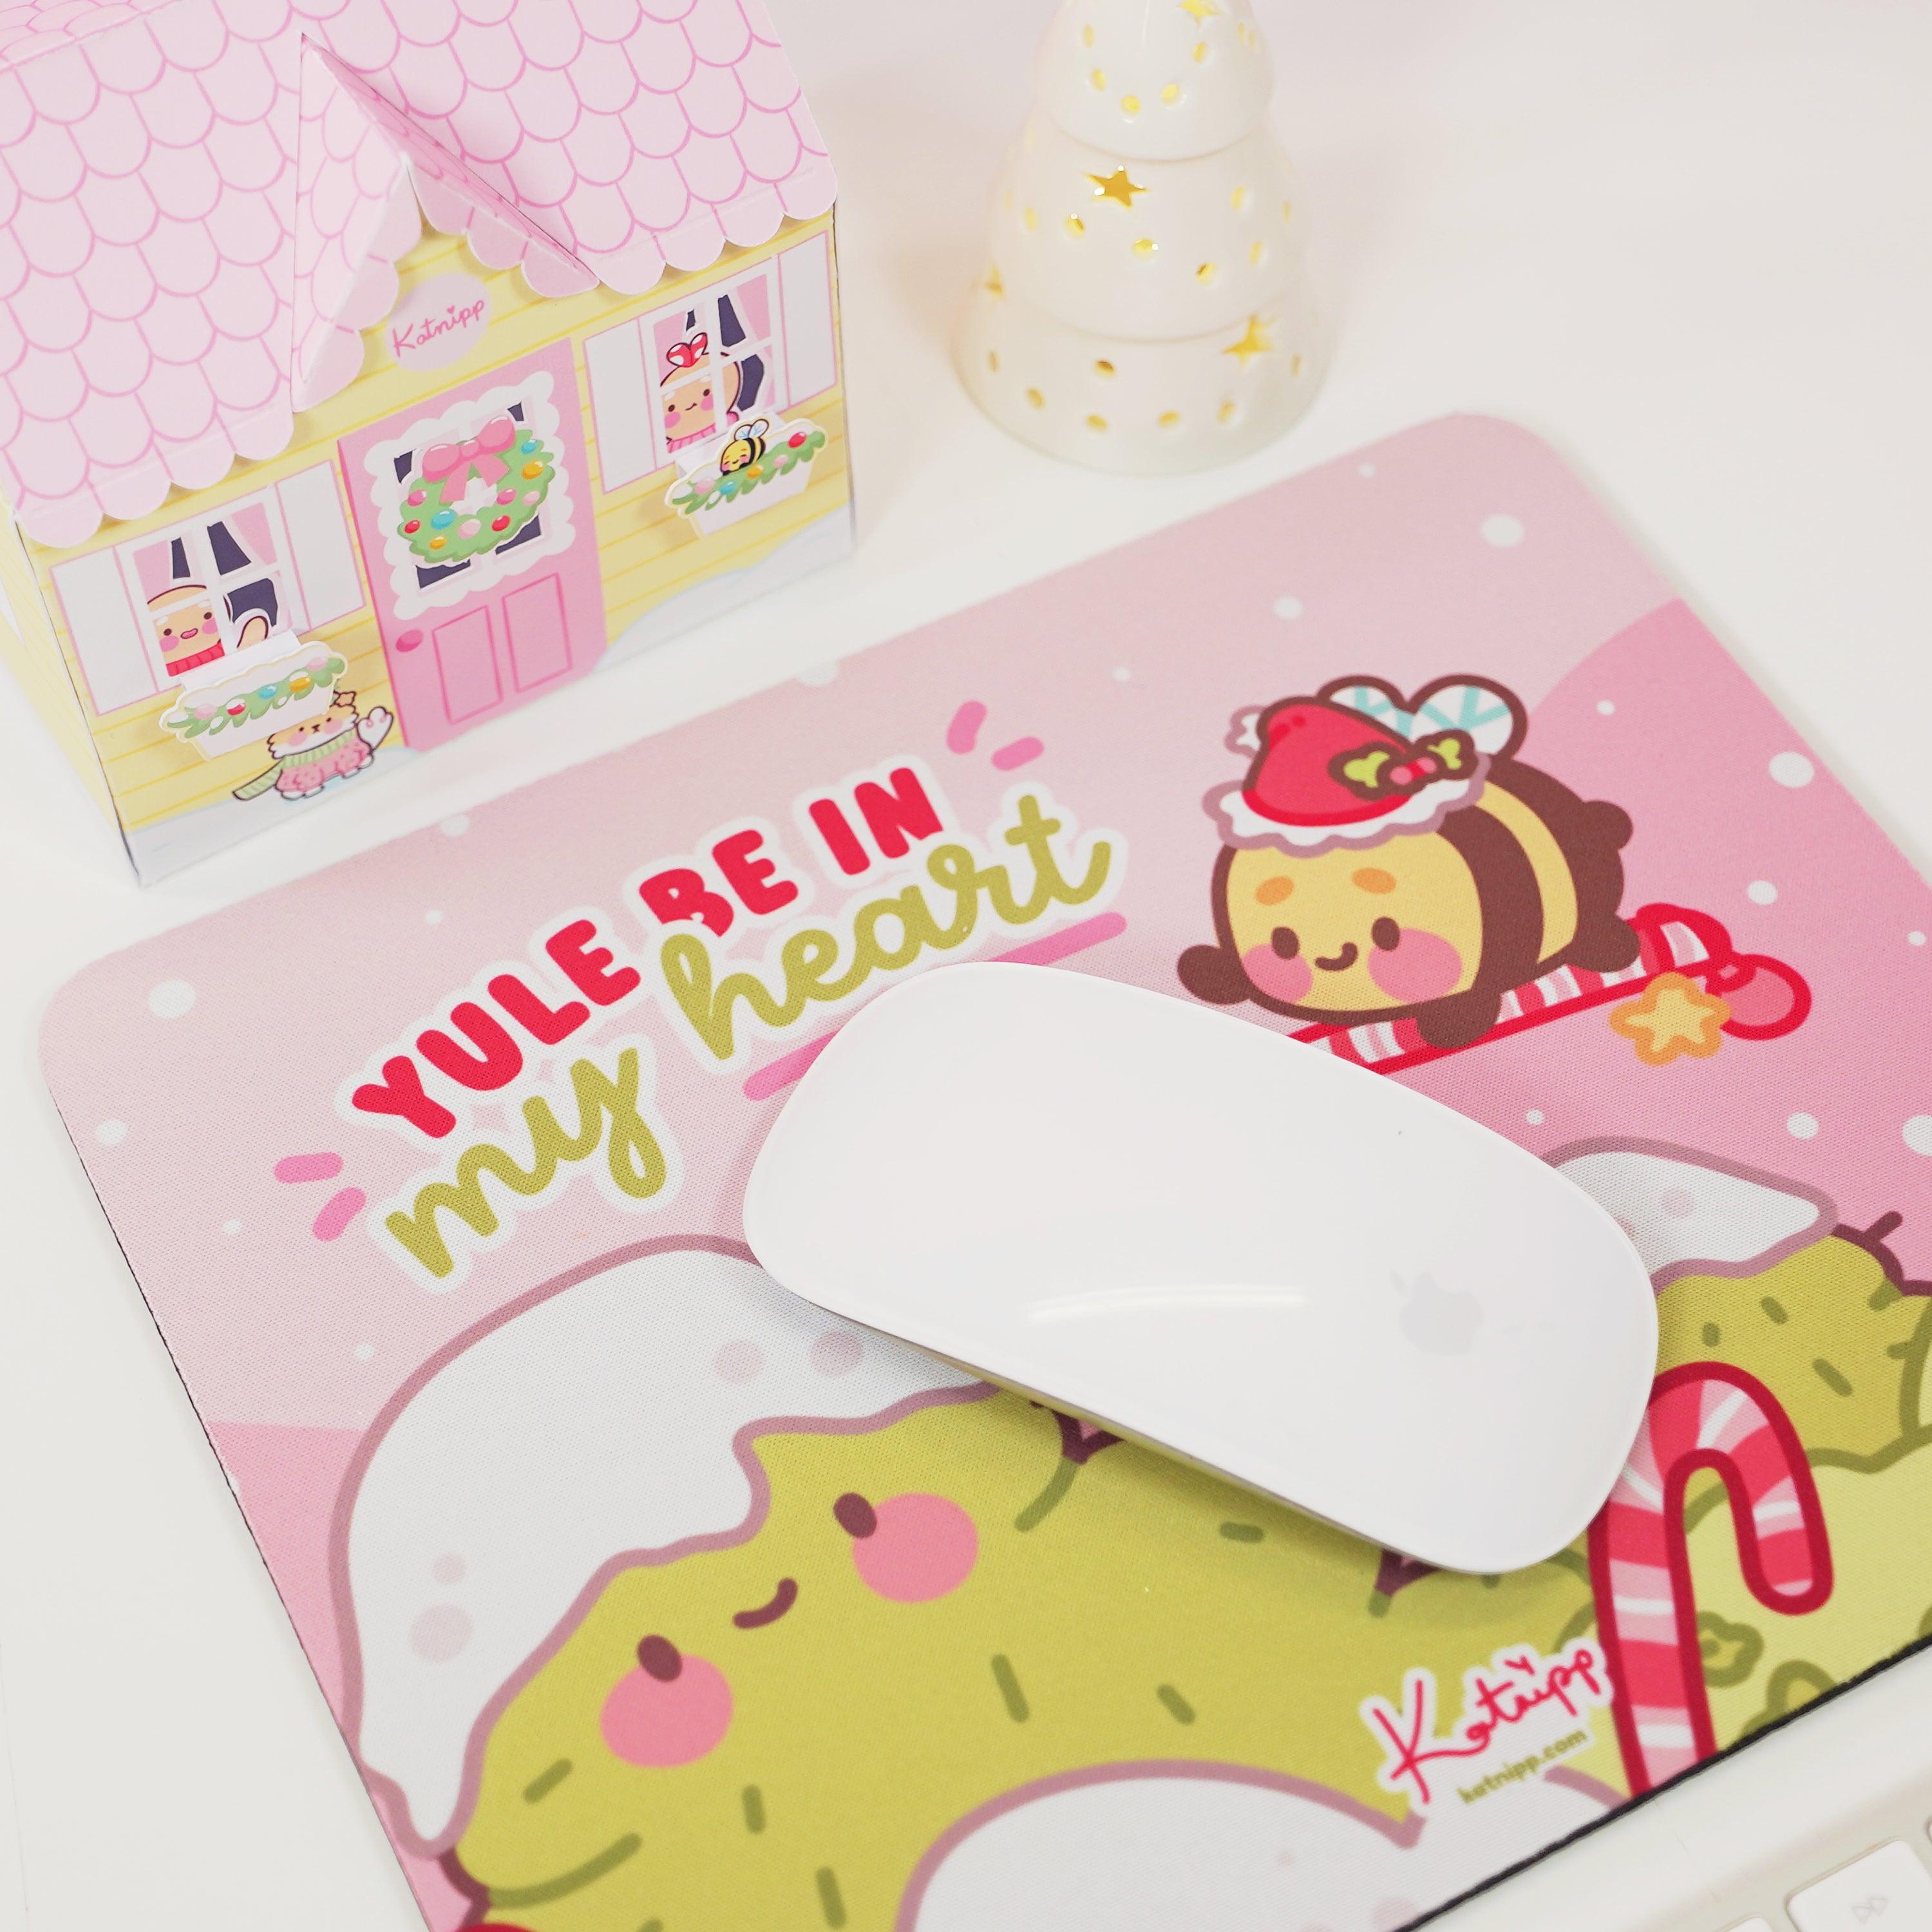 Bumblebutt Candy Cane Kawaii Mouse Pad - Katnipp Studios